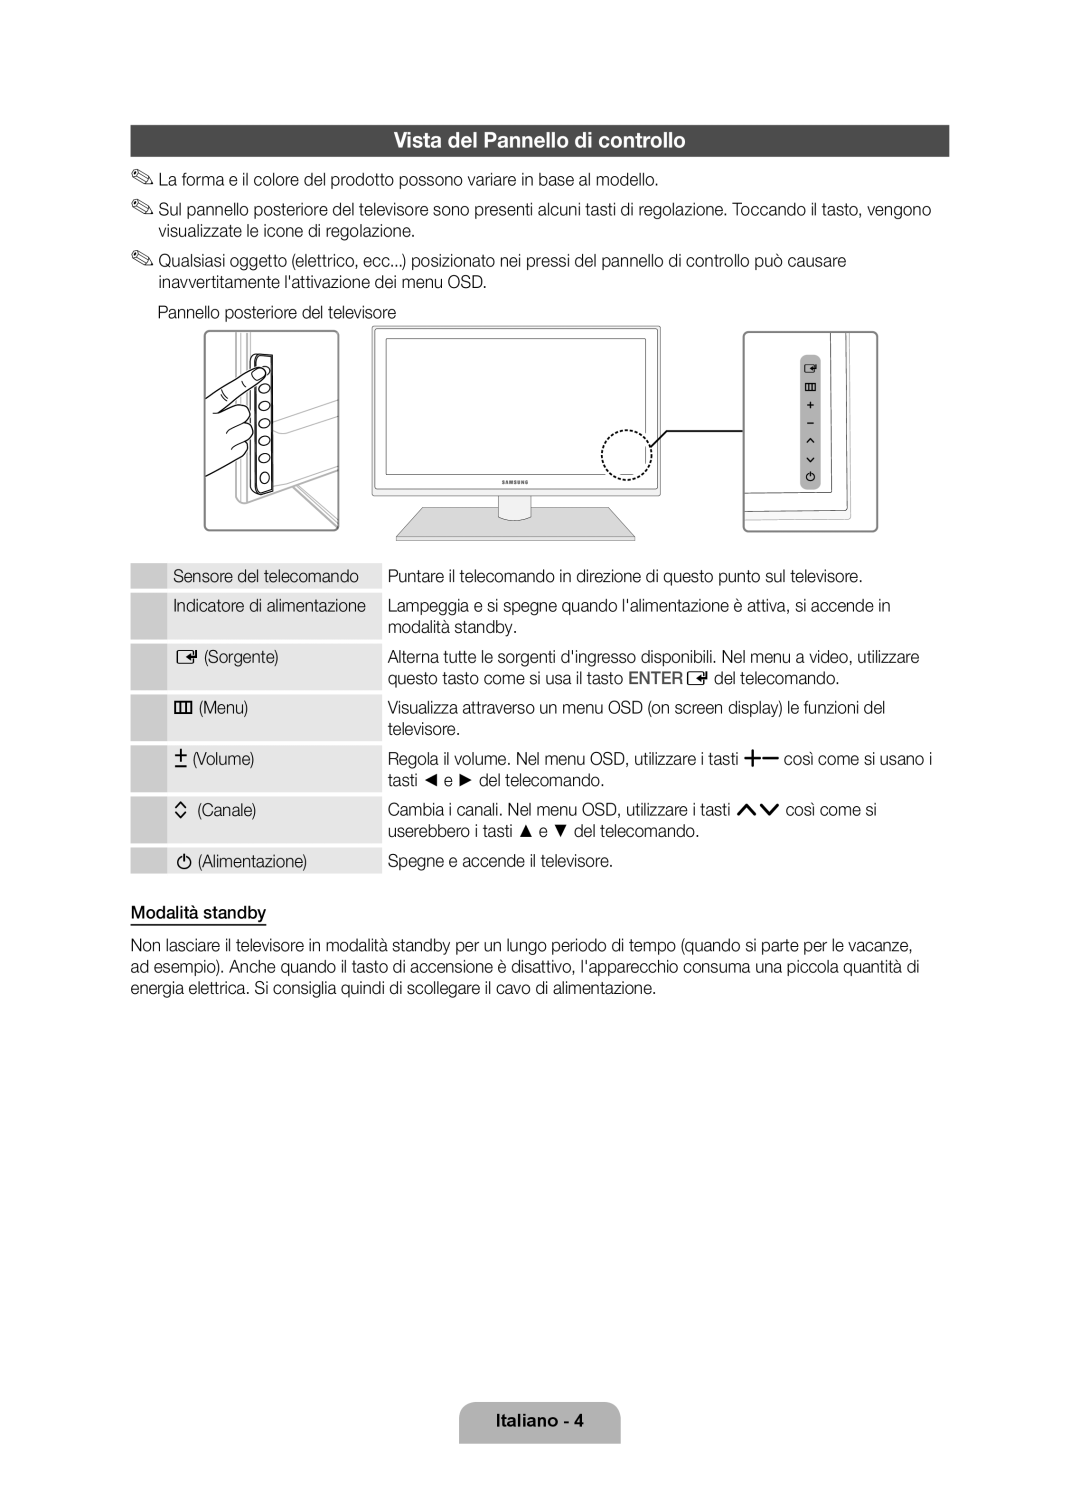 Samsung UE32D6530WSXXN, UE40D6530WSXZG manual Vista del Pannello di controllo, Italiano, Indicatore di alimentazione 